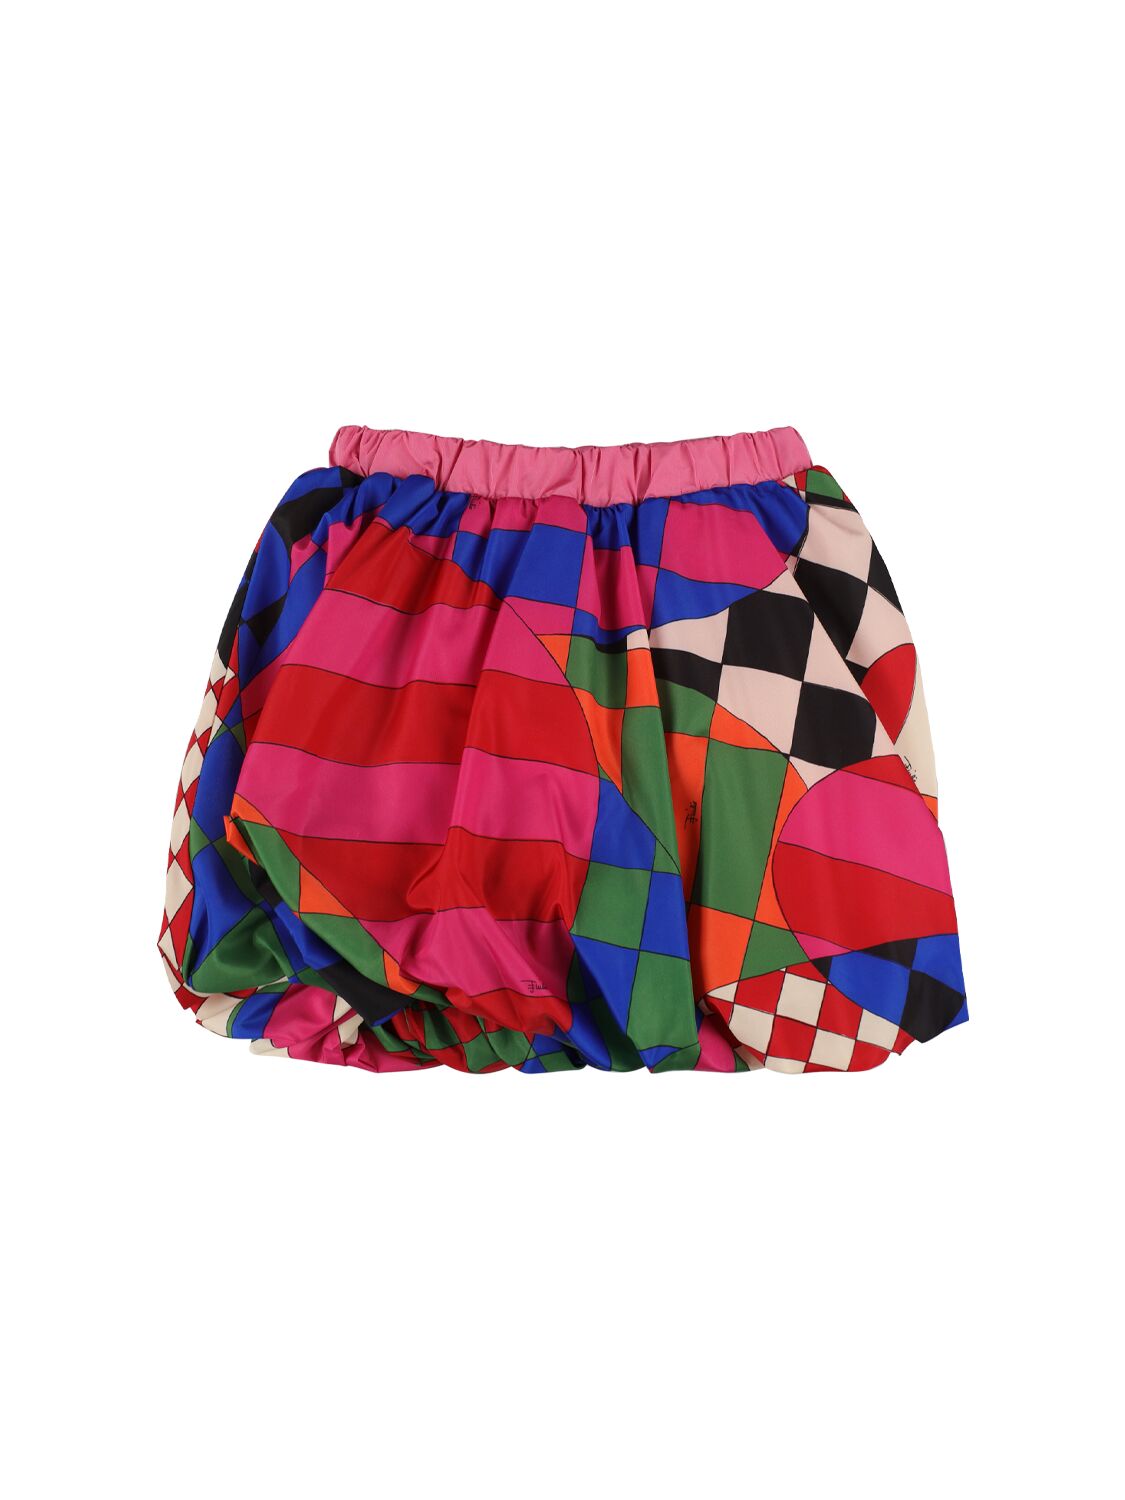 Image of Printed Taffeta Skirt